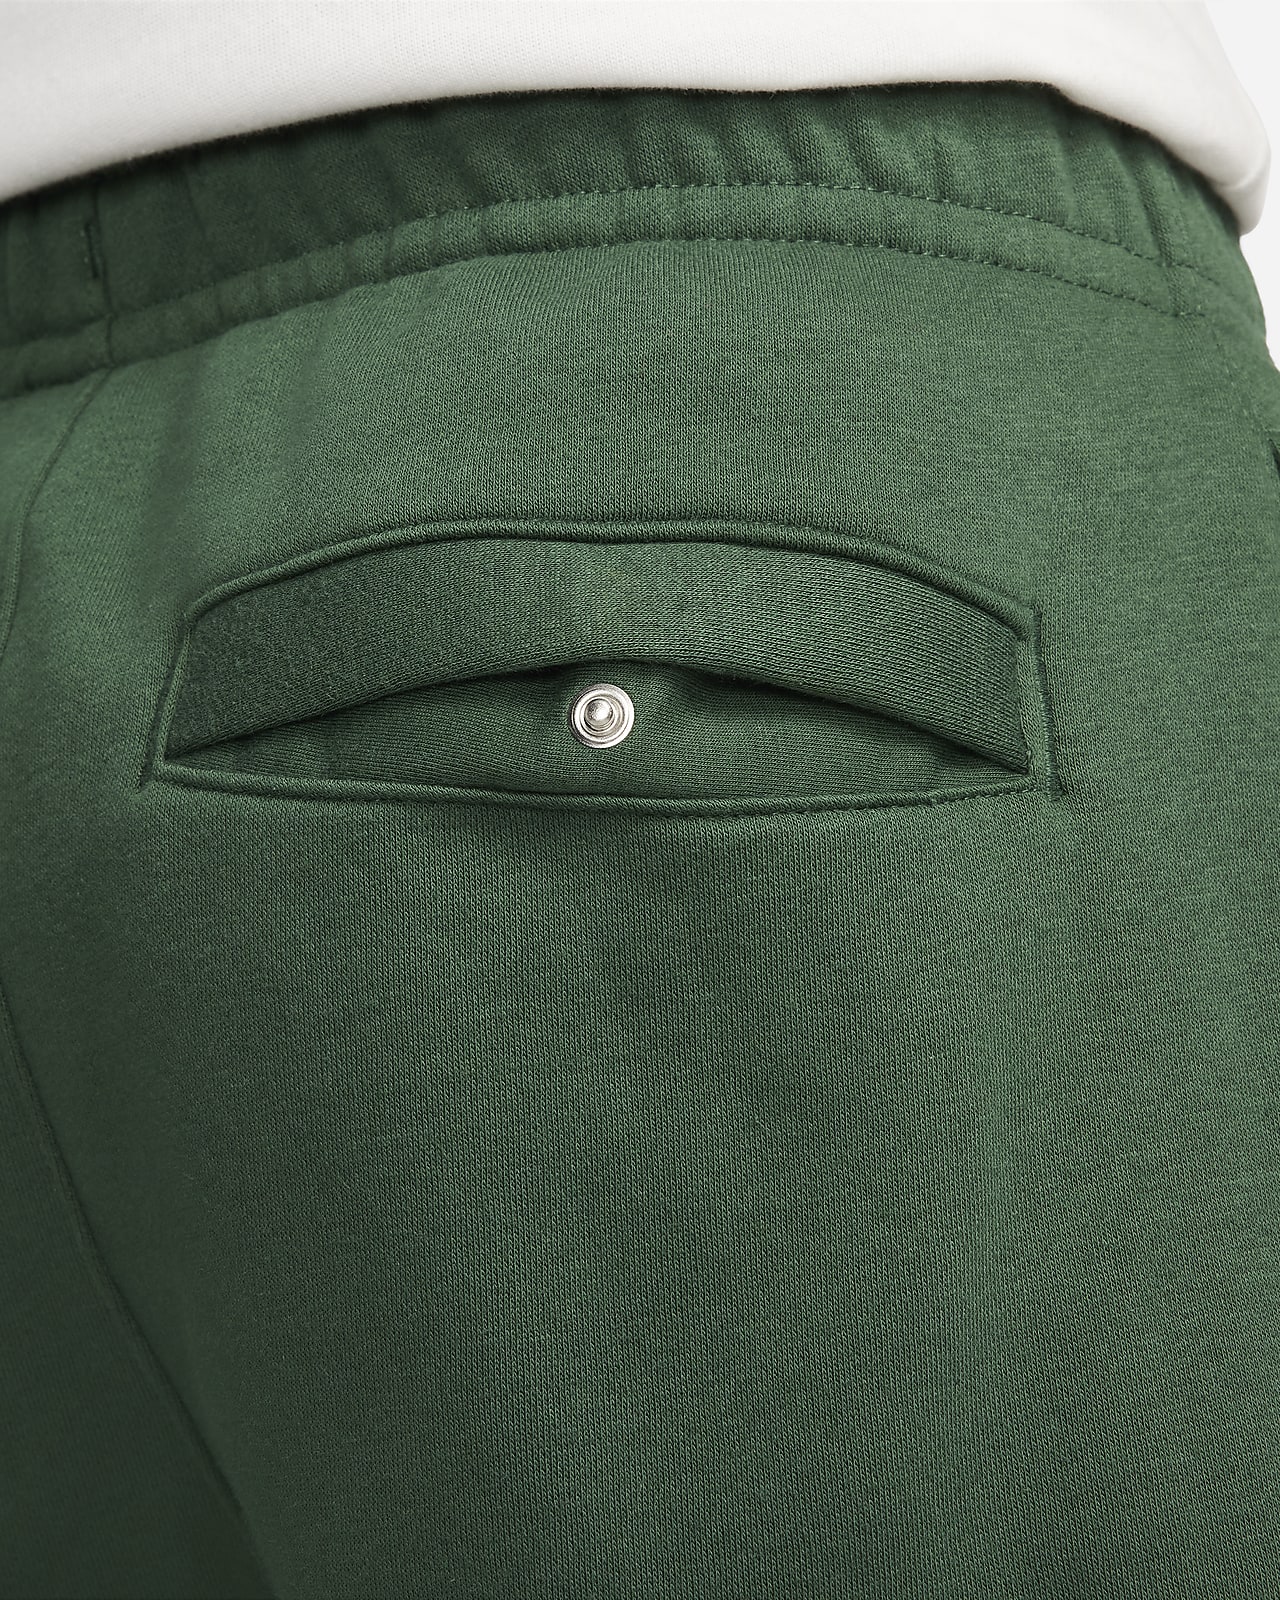 Sb Cuffed Fleece - Pantalon gris clair pour homme - Umbro © Officiel